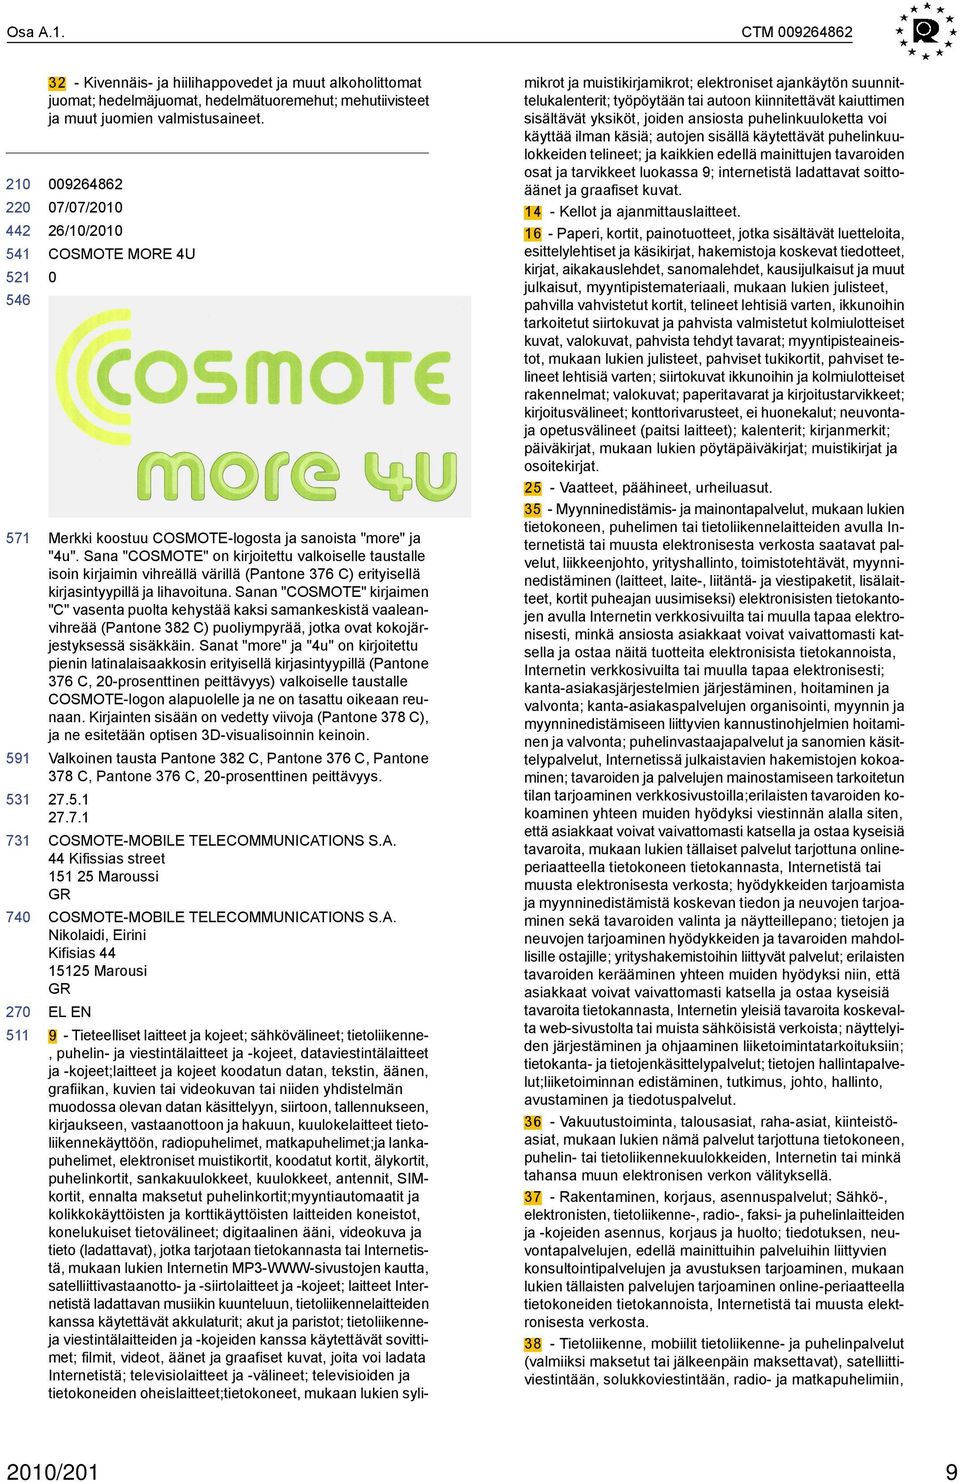 Sana "COSMOTE" on kirjoitettu valkoiselle taustalle isoin kirjaimin vihreällä värillä (Pantone 376 C) erityisellä kirjasintyypillä ja lihavoituna.